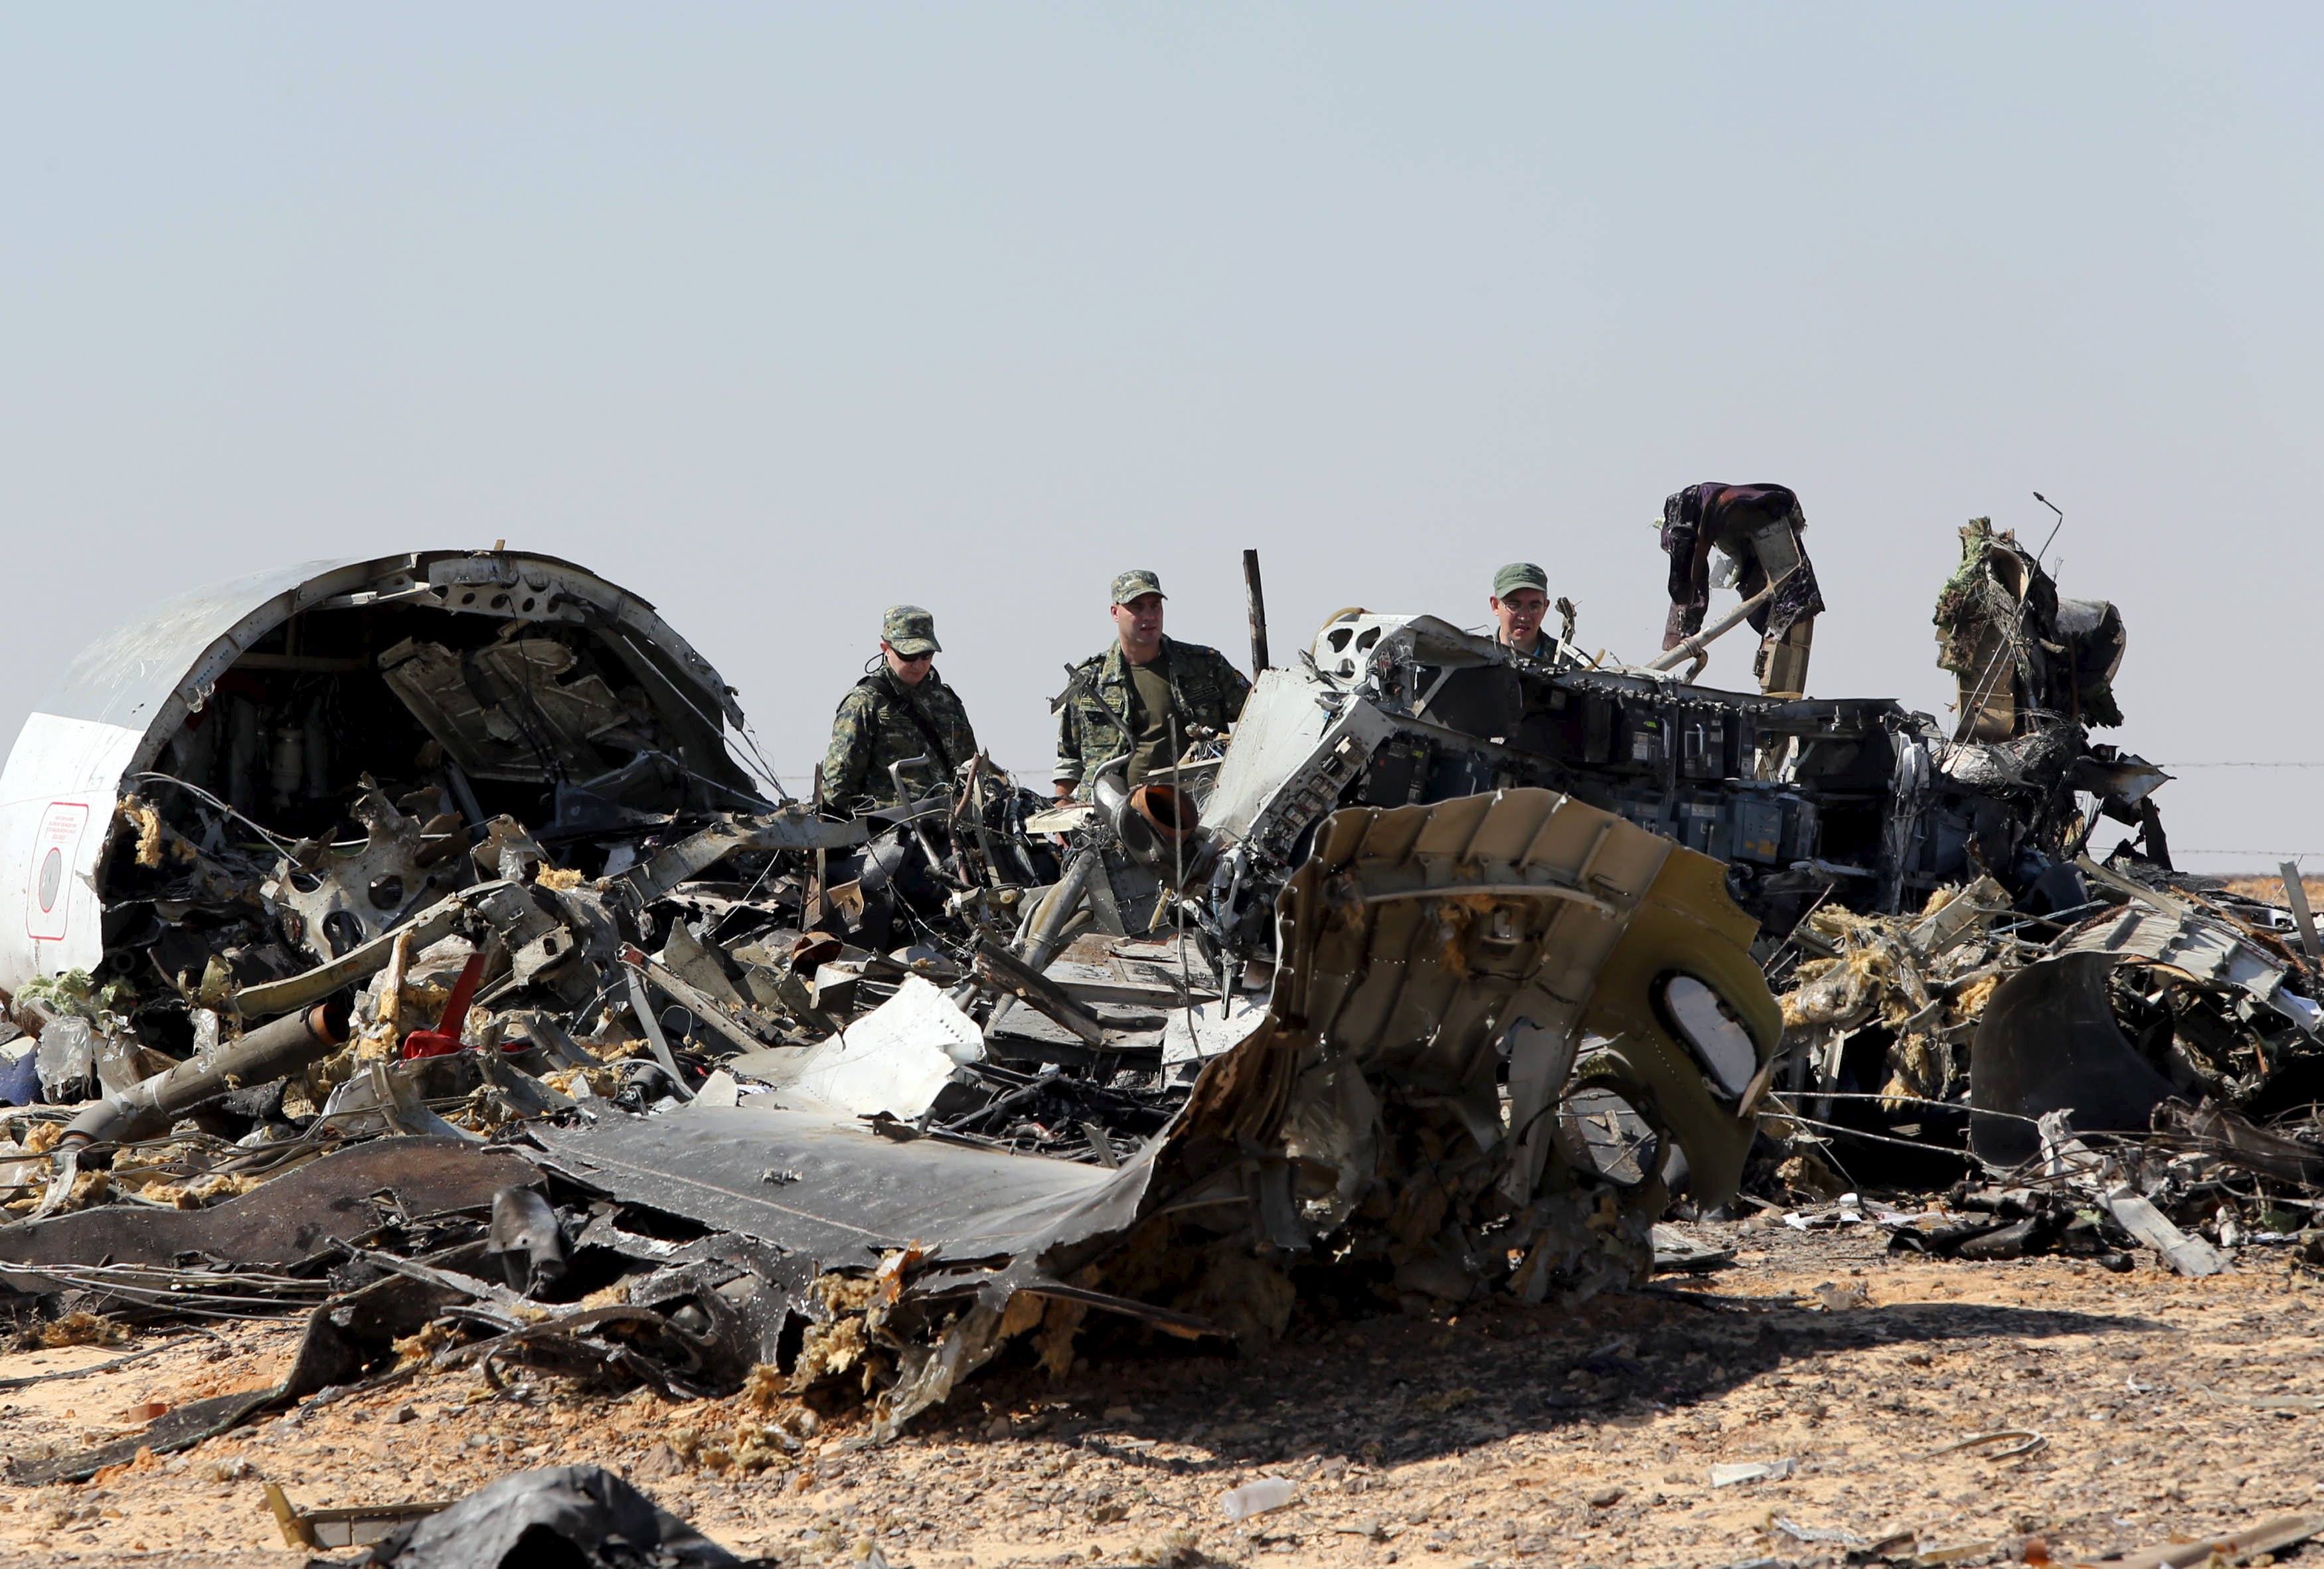 6 октября 2015. Катастрофа a321 над Синайским полуостровом. Авиакатастрофа a321 над Синаем. Авиакатастрофа а321 в Египте.